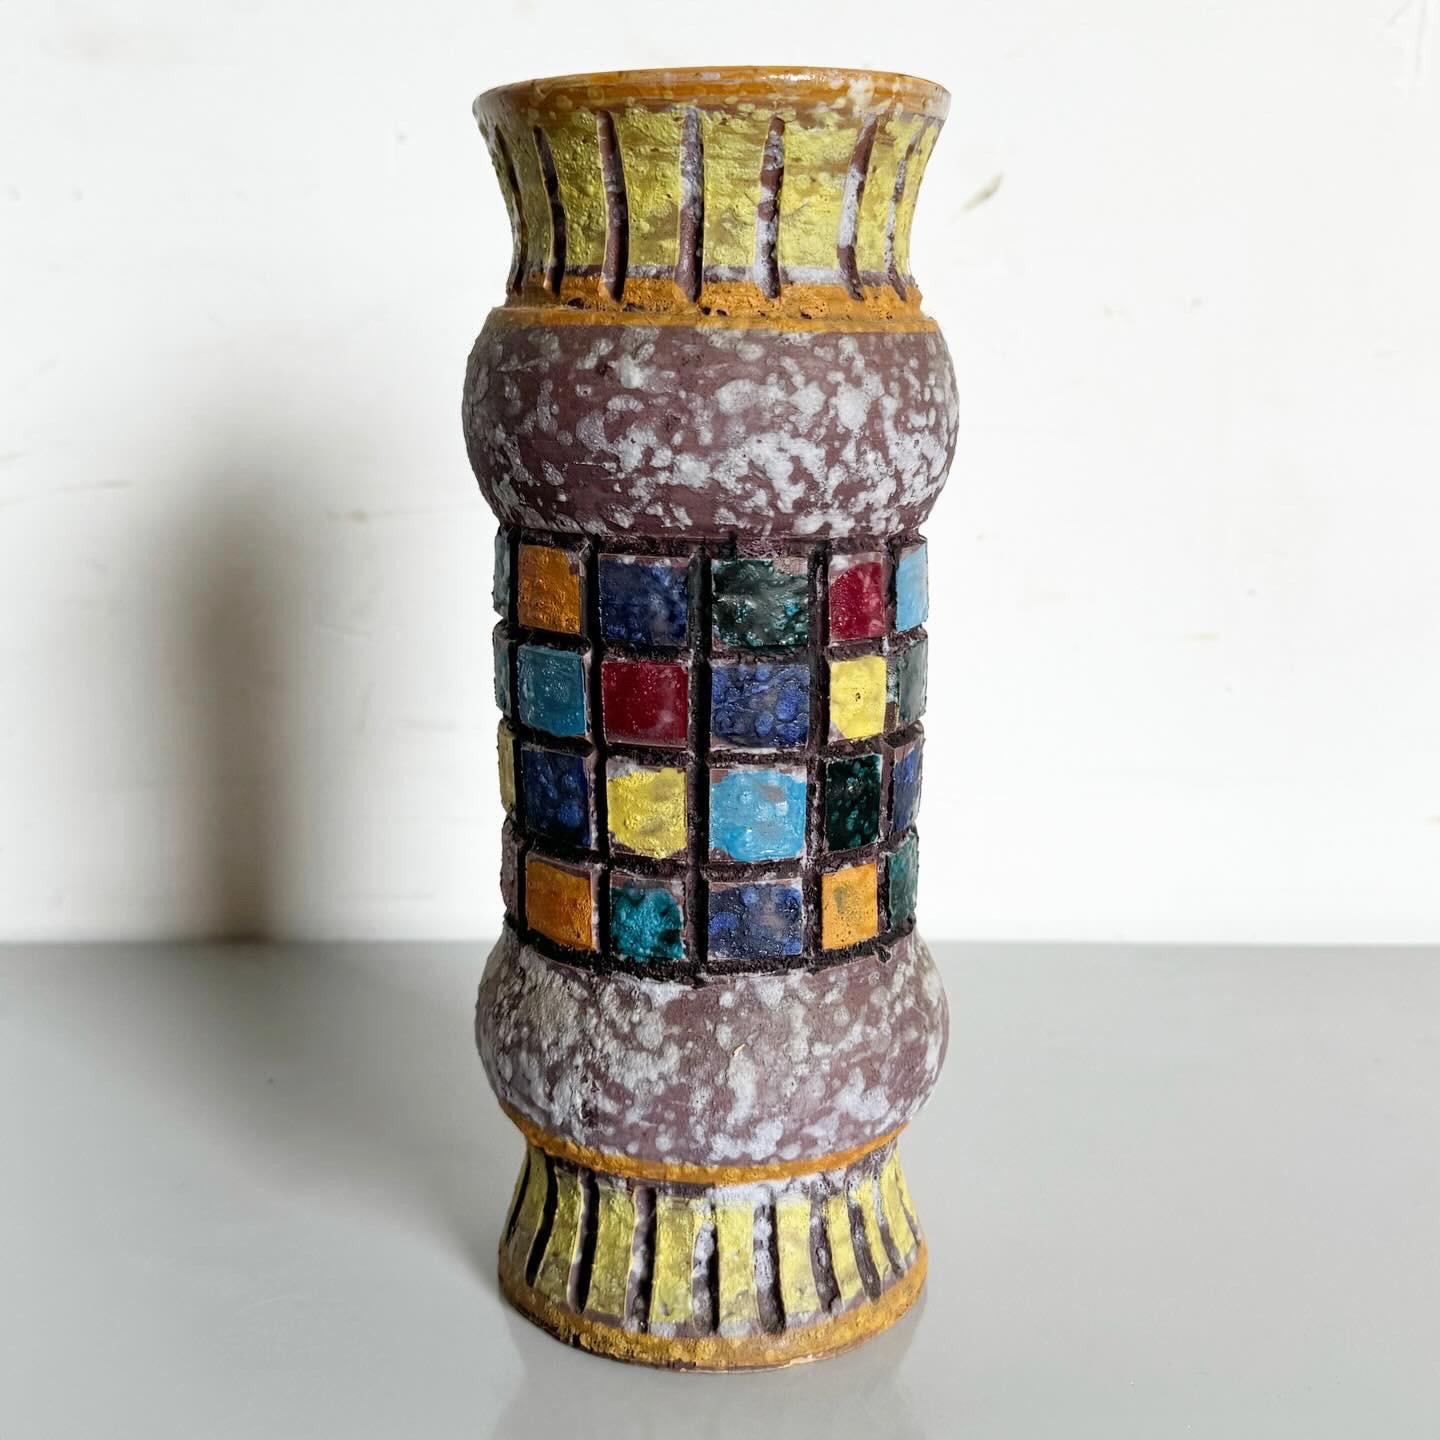 Ajoutez une touche d'élégance rétro à votre décor avec ce vase de table Modern-Decor. Le vase présente un design épuré orné de motifs carrés multicolores, incarnant l'esthétique post-moderne du milieu du siècle. Ses motifs vibrants contre une forme